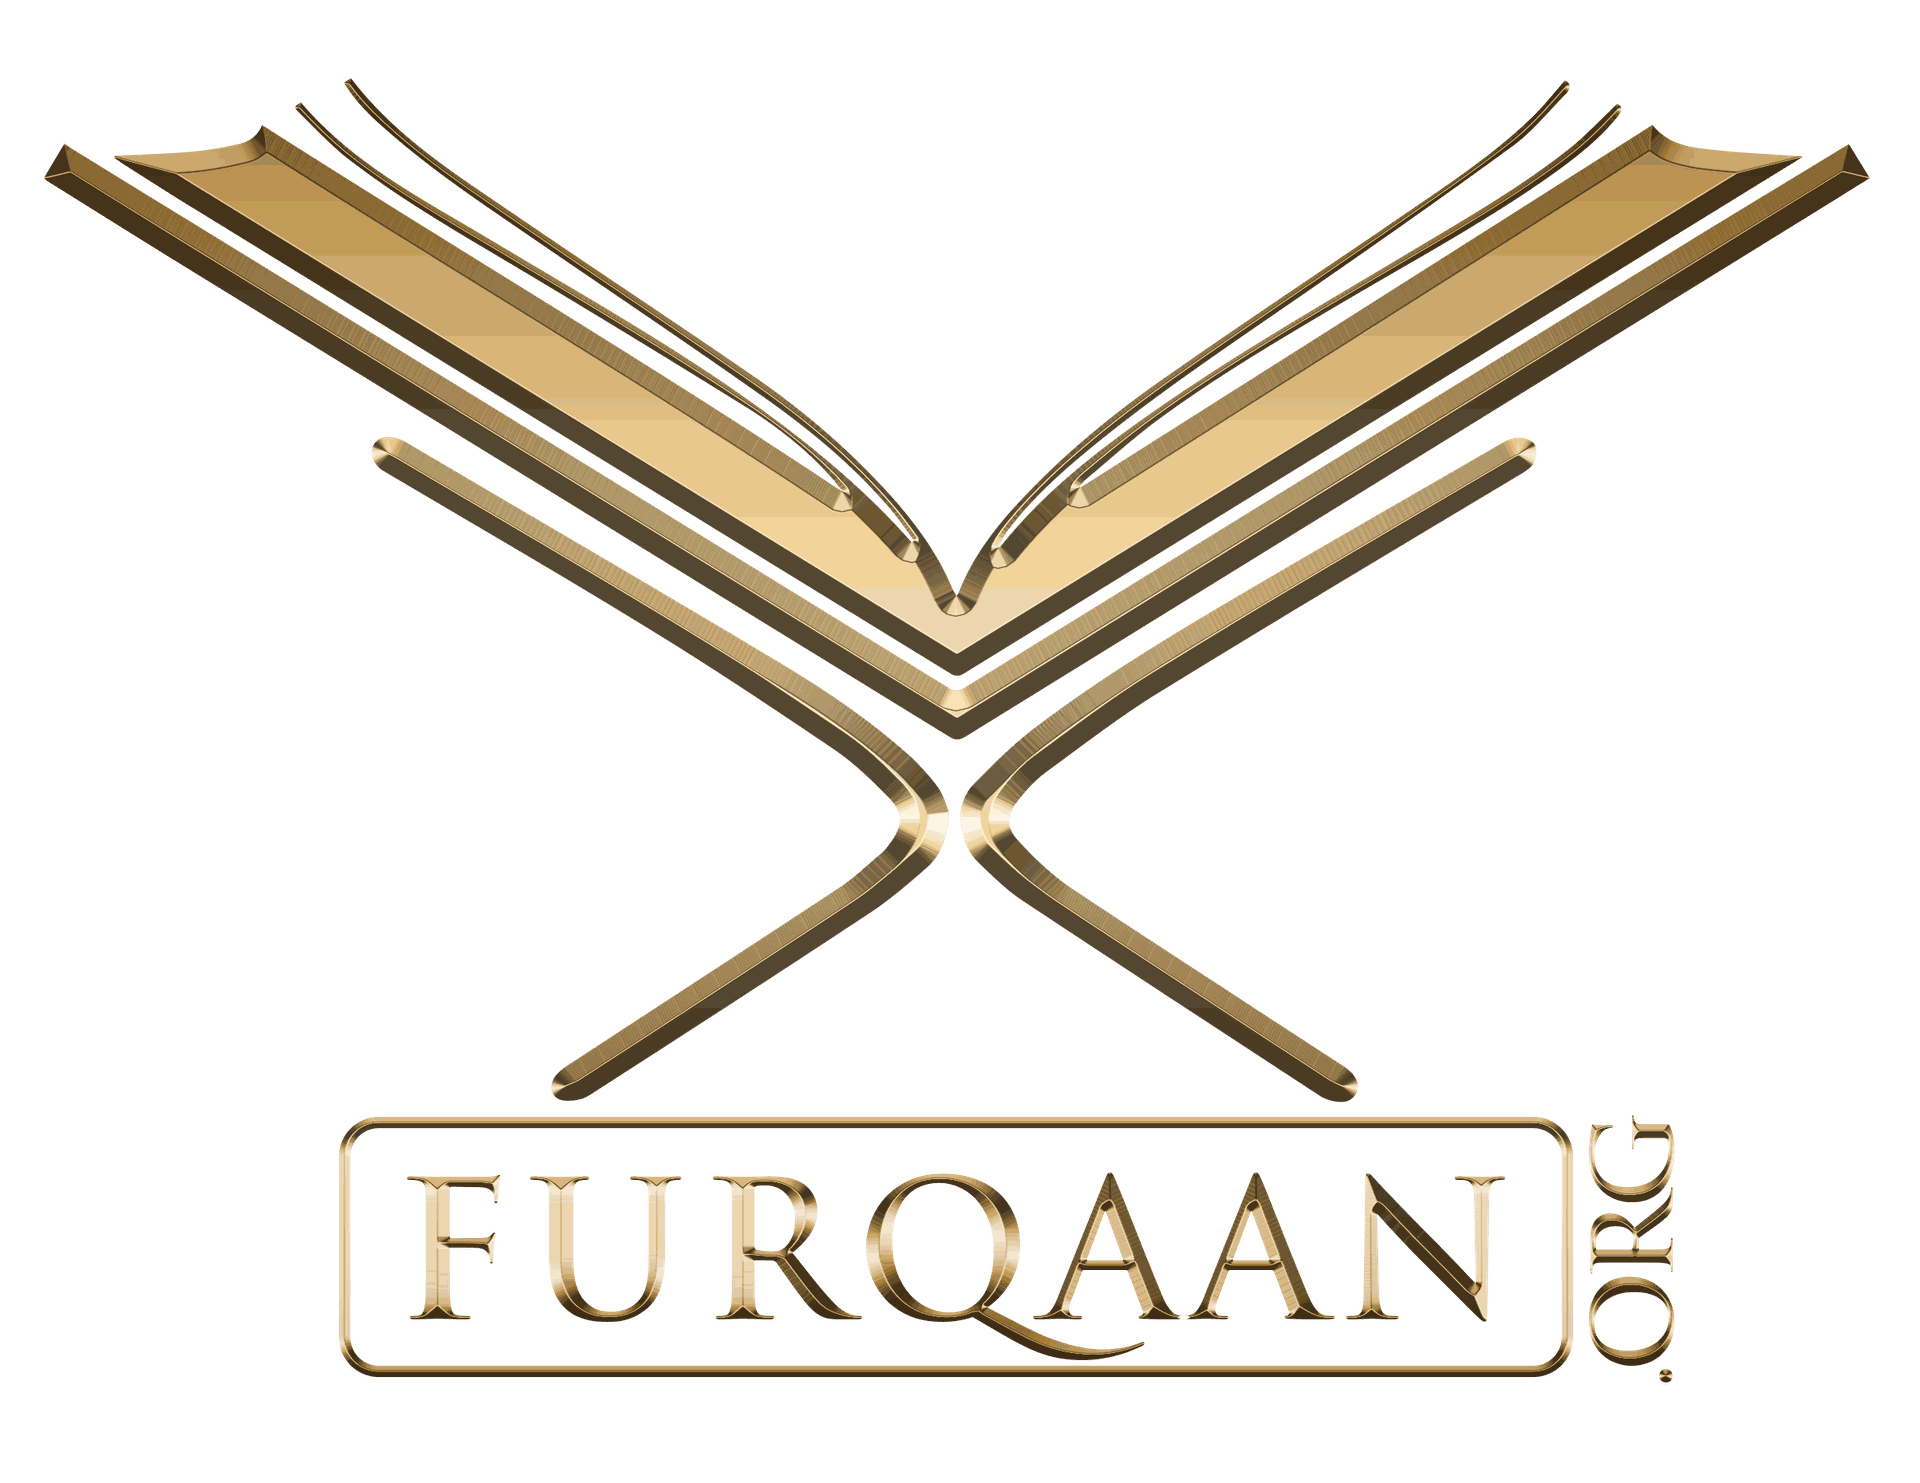 Al Furqaan Foundation